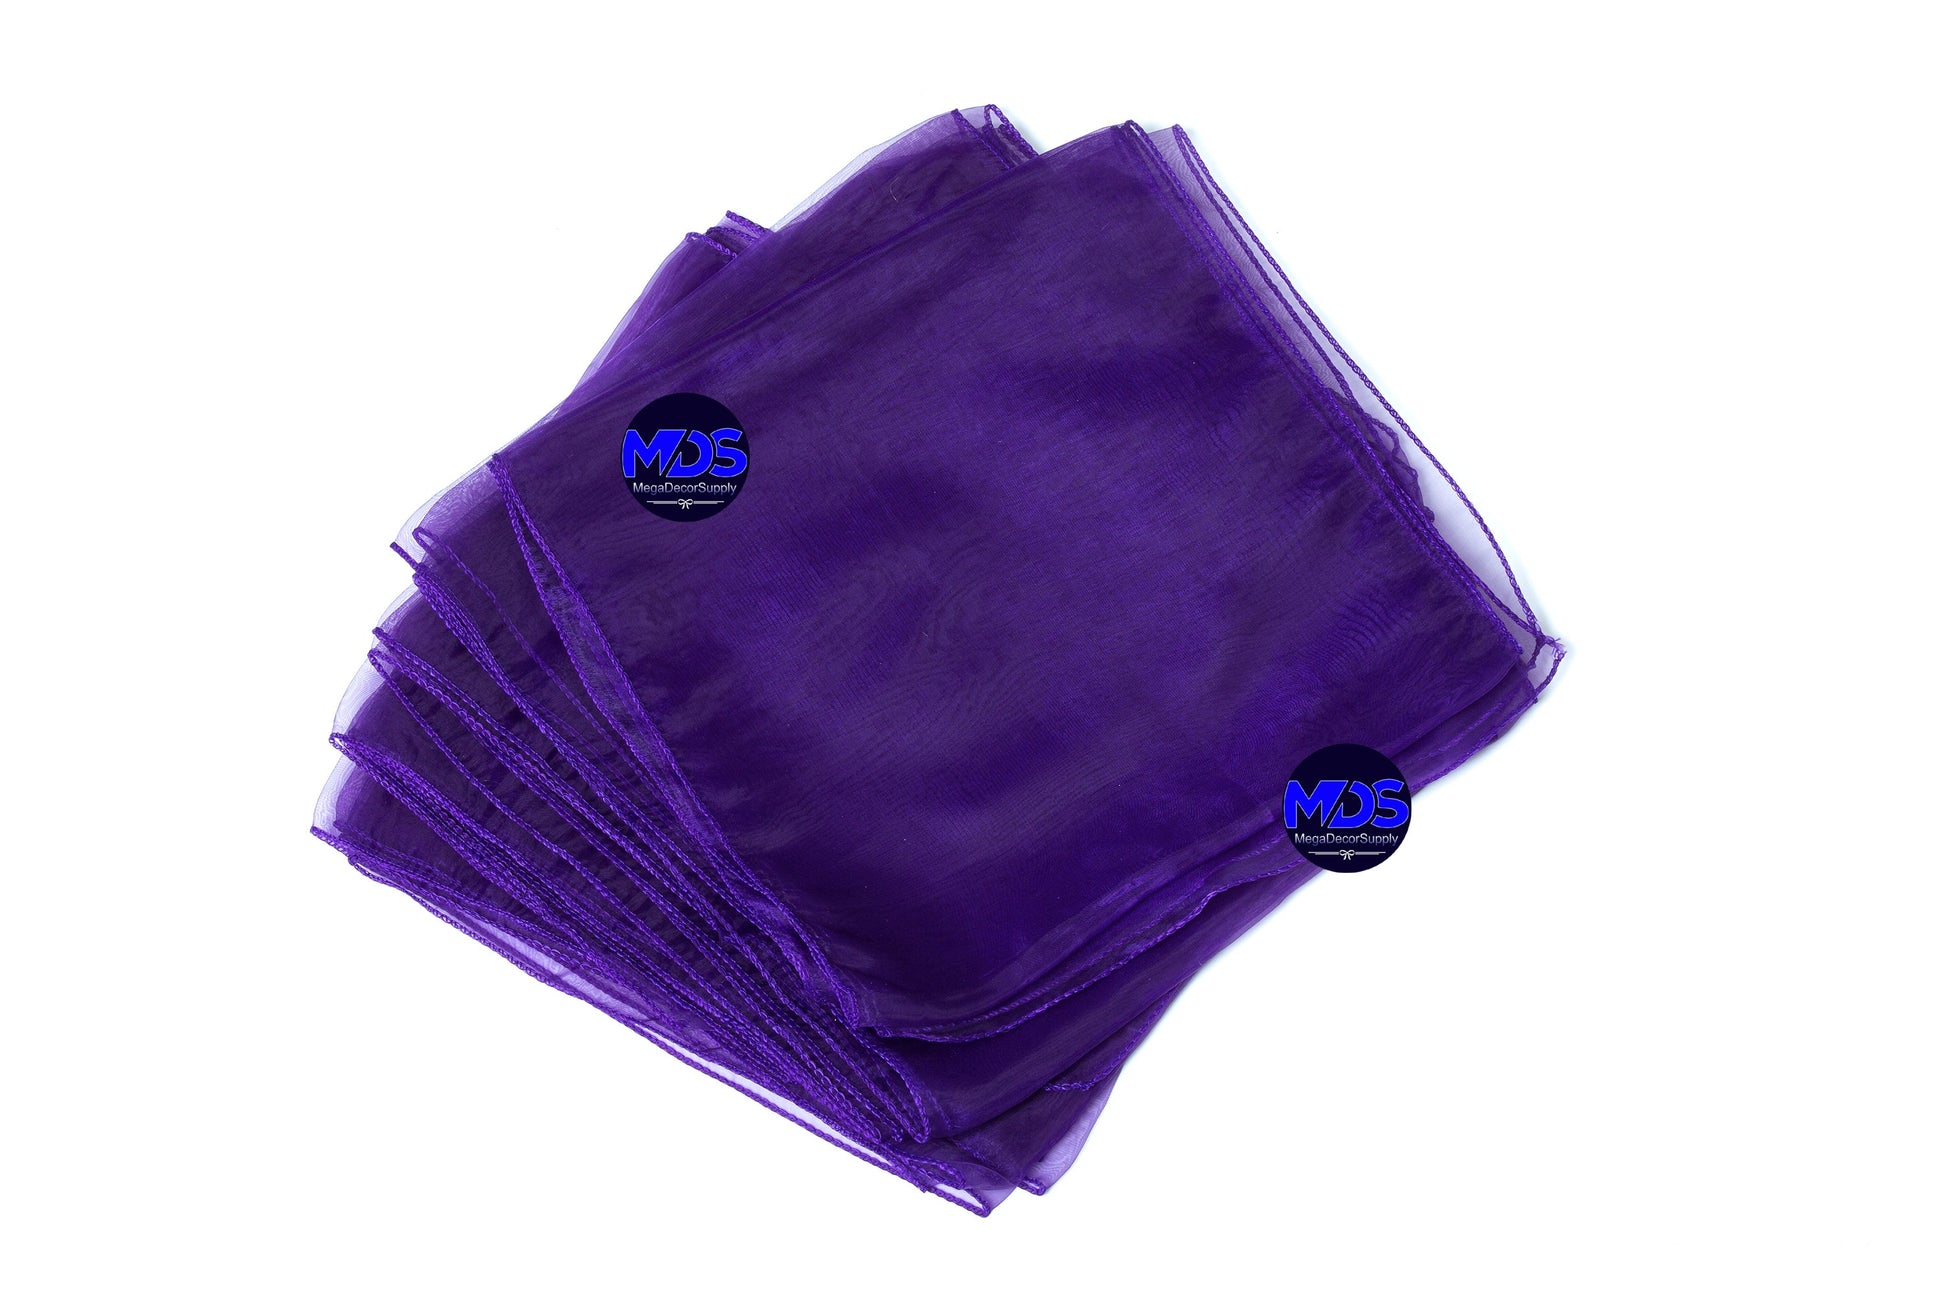 Cadbury Purple,246202a7-4a04-4ba6-a151-e7de1fd57833